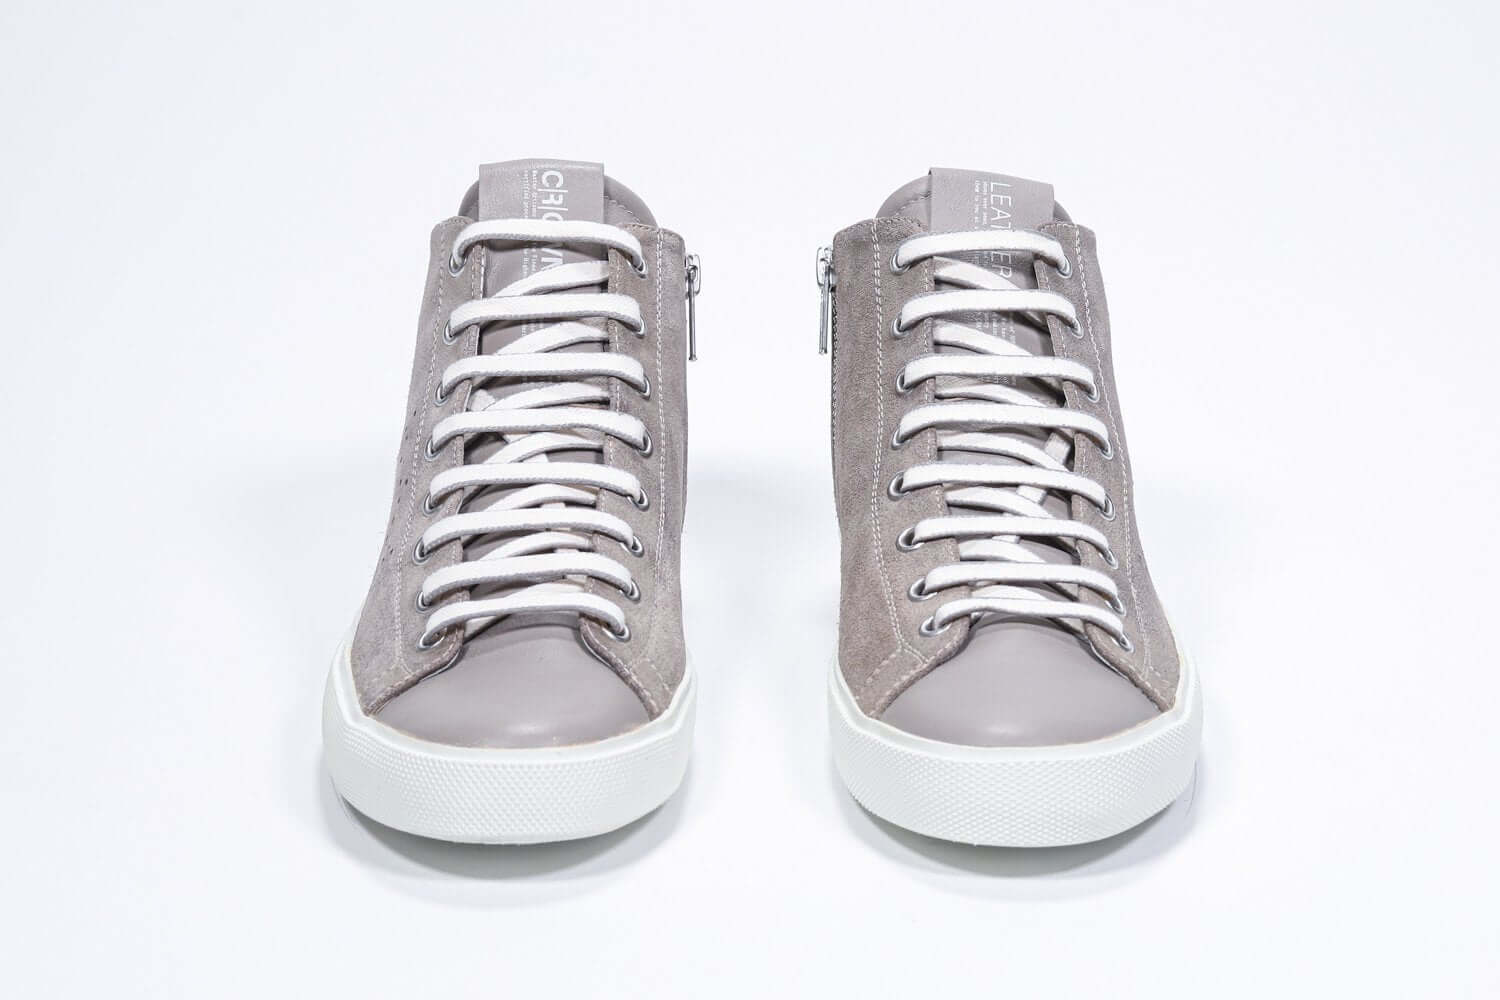 Vorderansicht des beigefarbenen Mid-Top-Schuhs sneaker mit Obermaterial aus Vollwildleder mit perforiertem Kronenlogo, internem Reißverschluss und weißer Sohle.